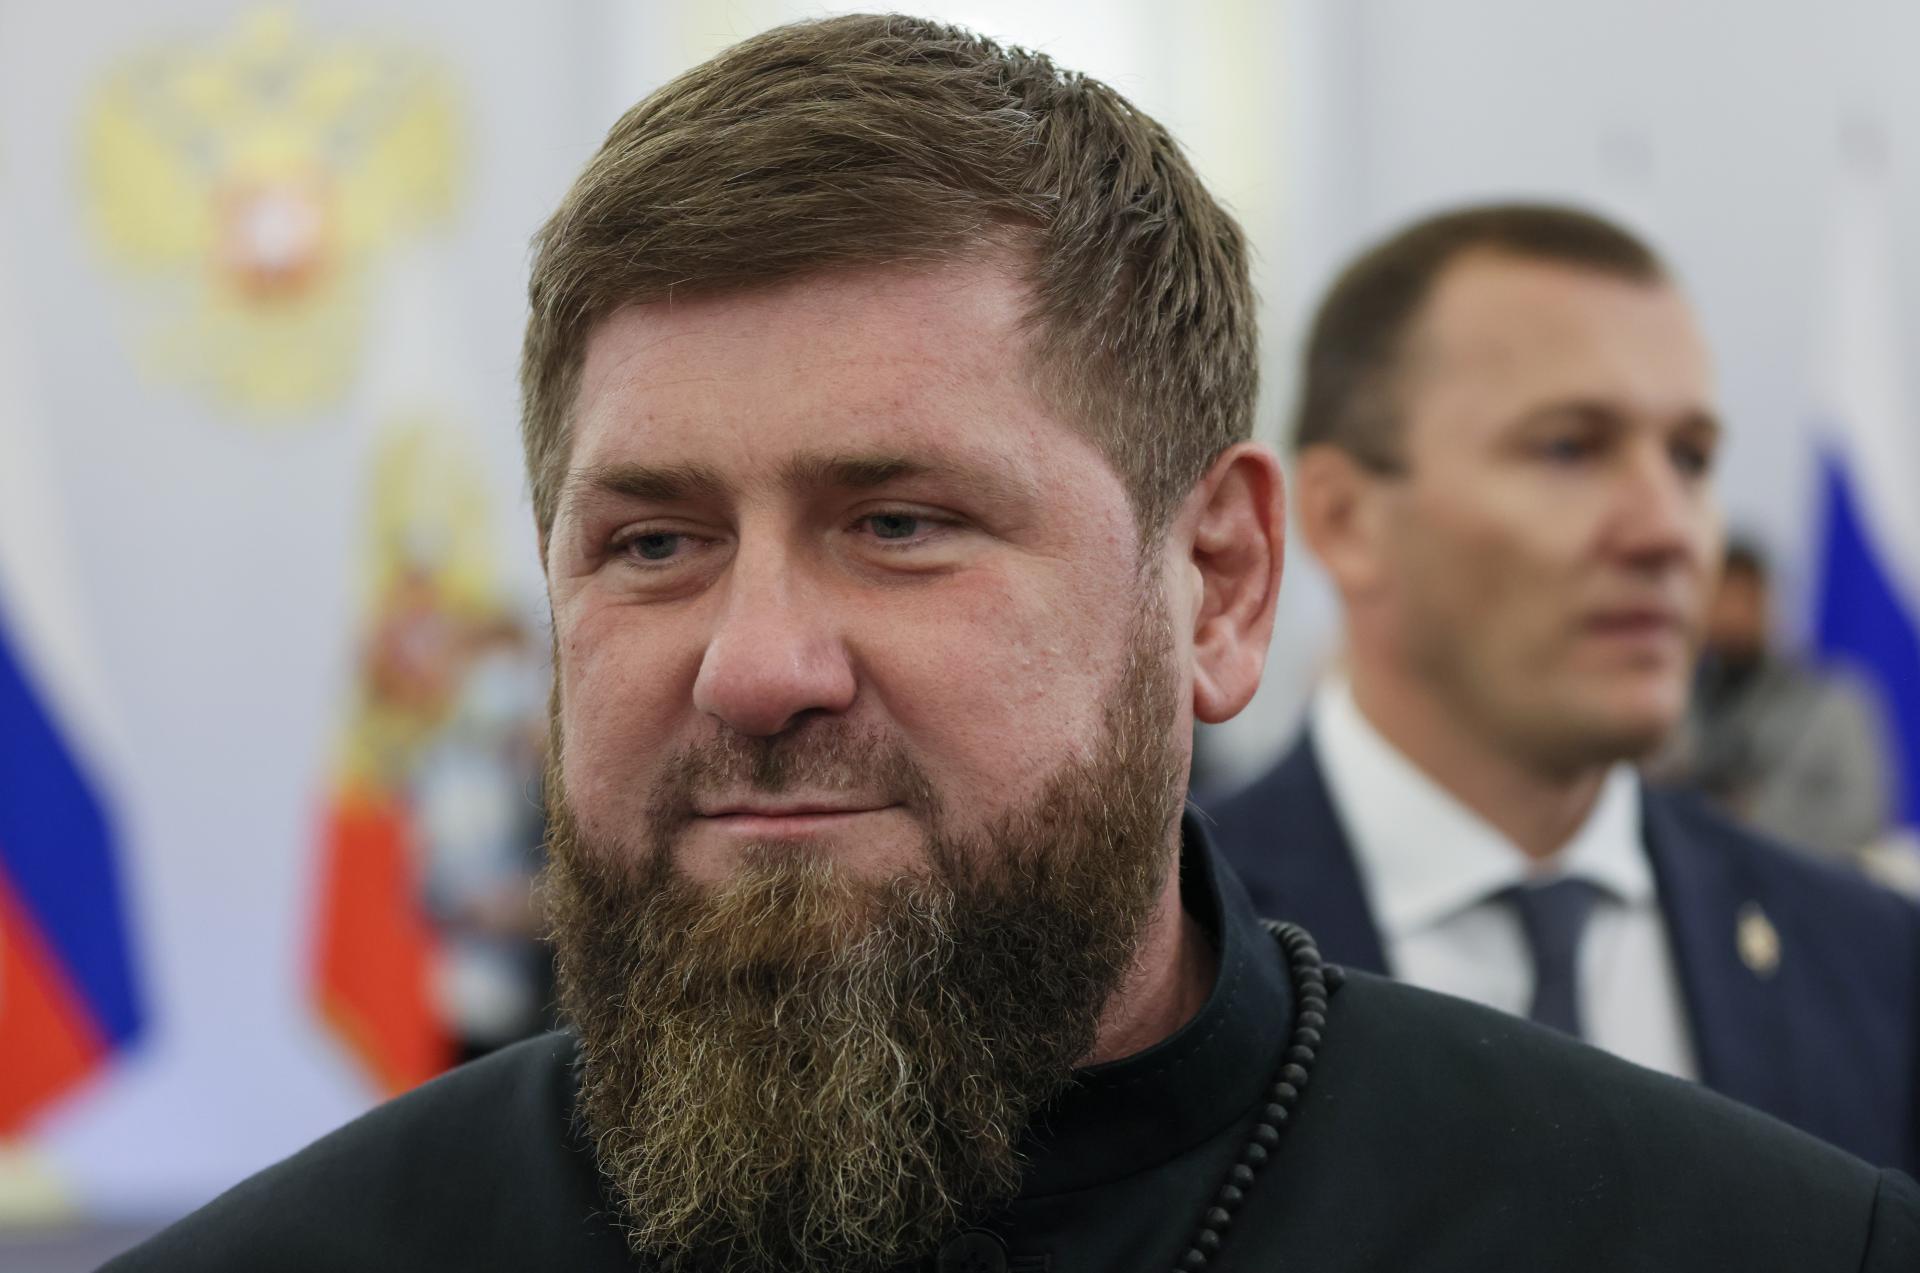 Putin udelil Kadyrovovi, ktorý verboval na Ukrajinu, hodnosť generálplukovníka